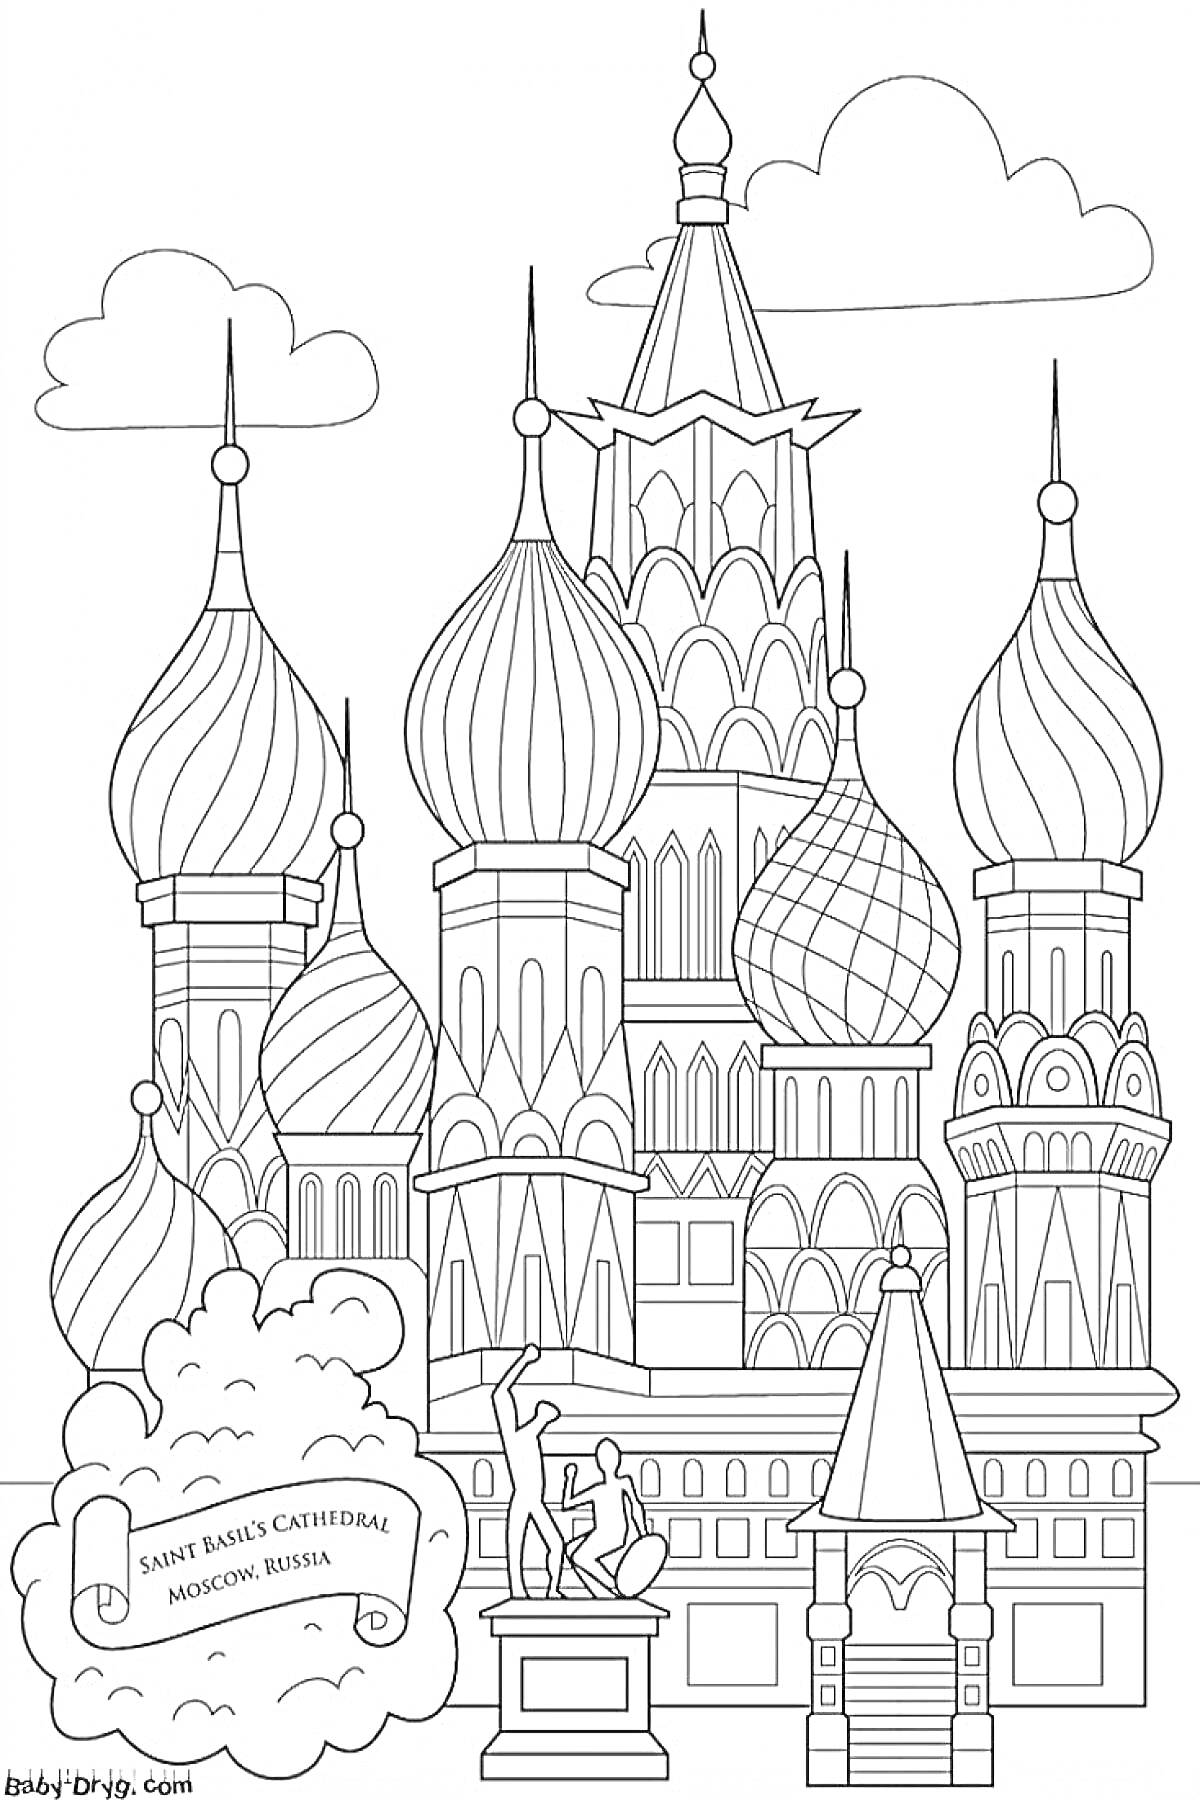 Раскраска Собор Василия Блаженного, купола, облака, табличка с надписью 